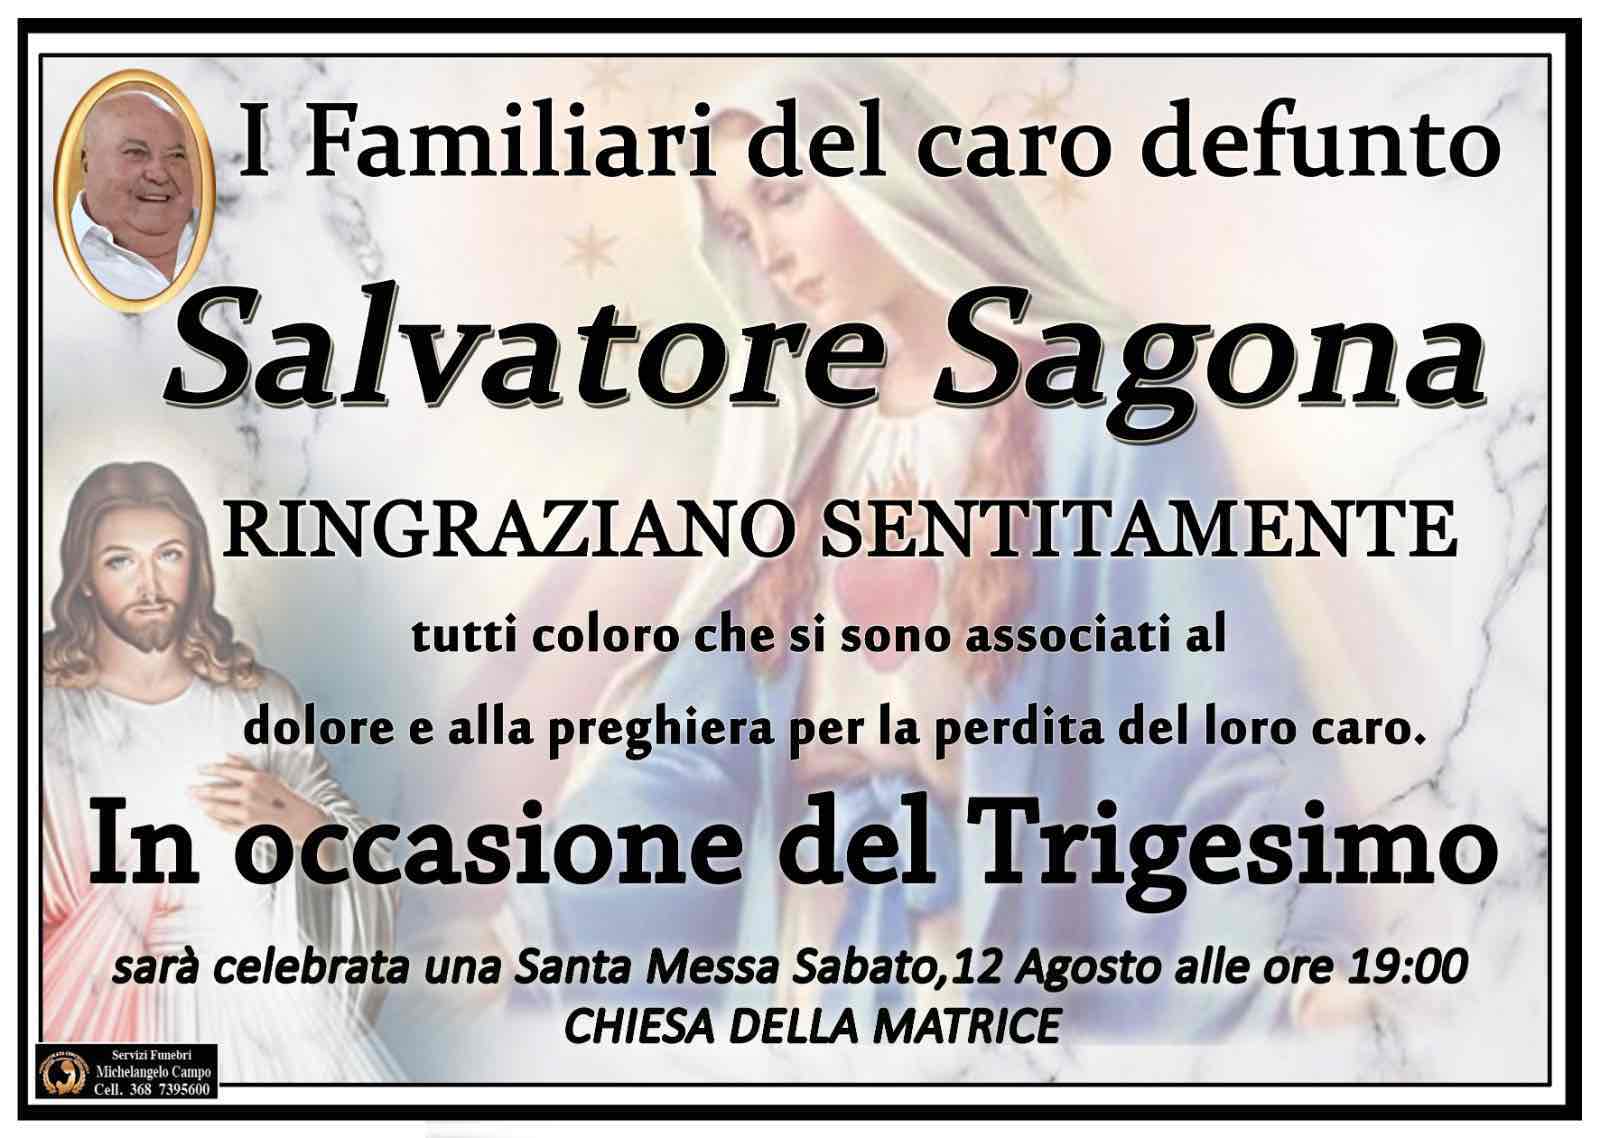 Salvatore Sagona